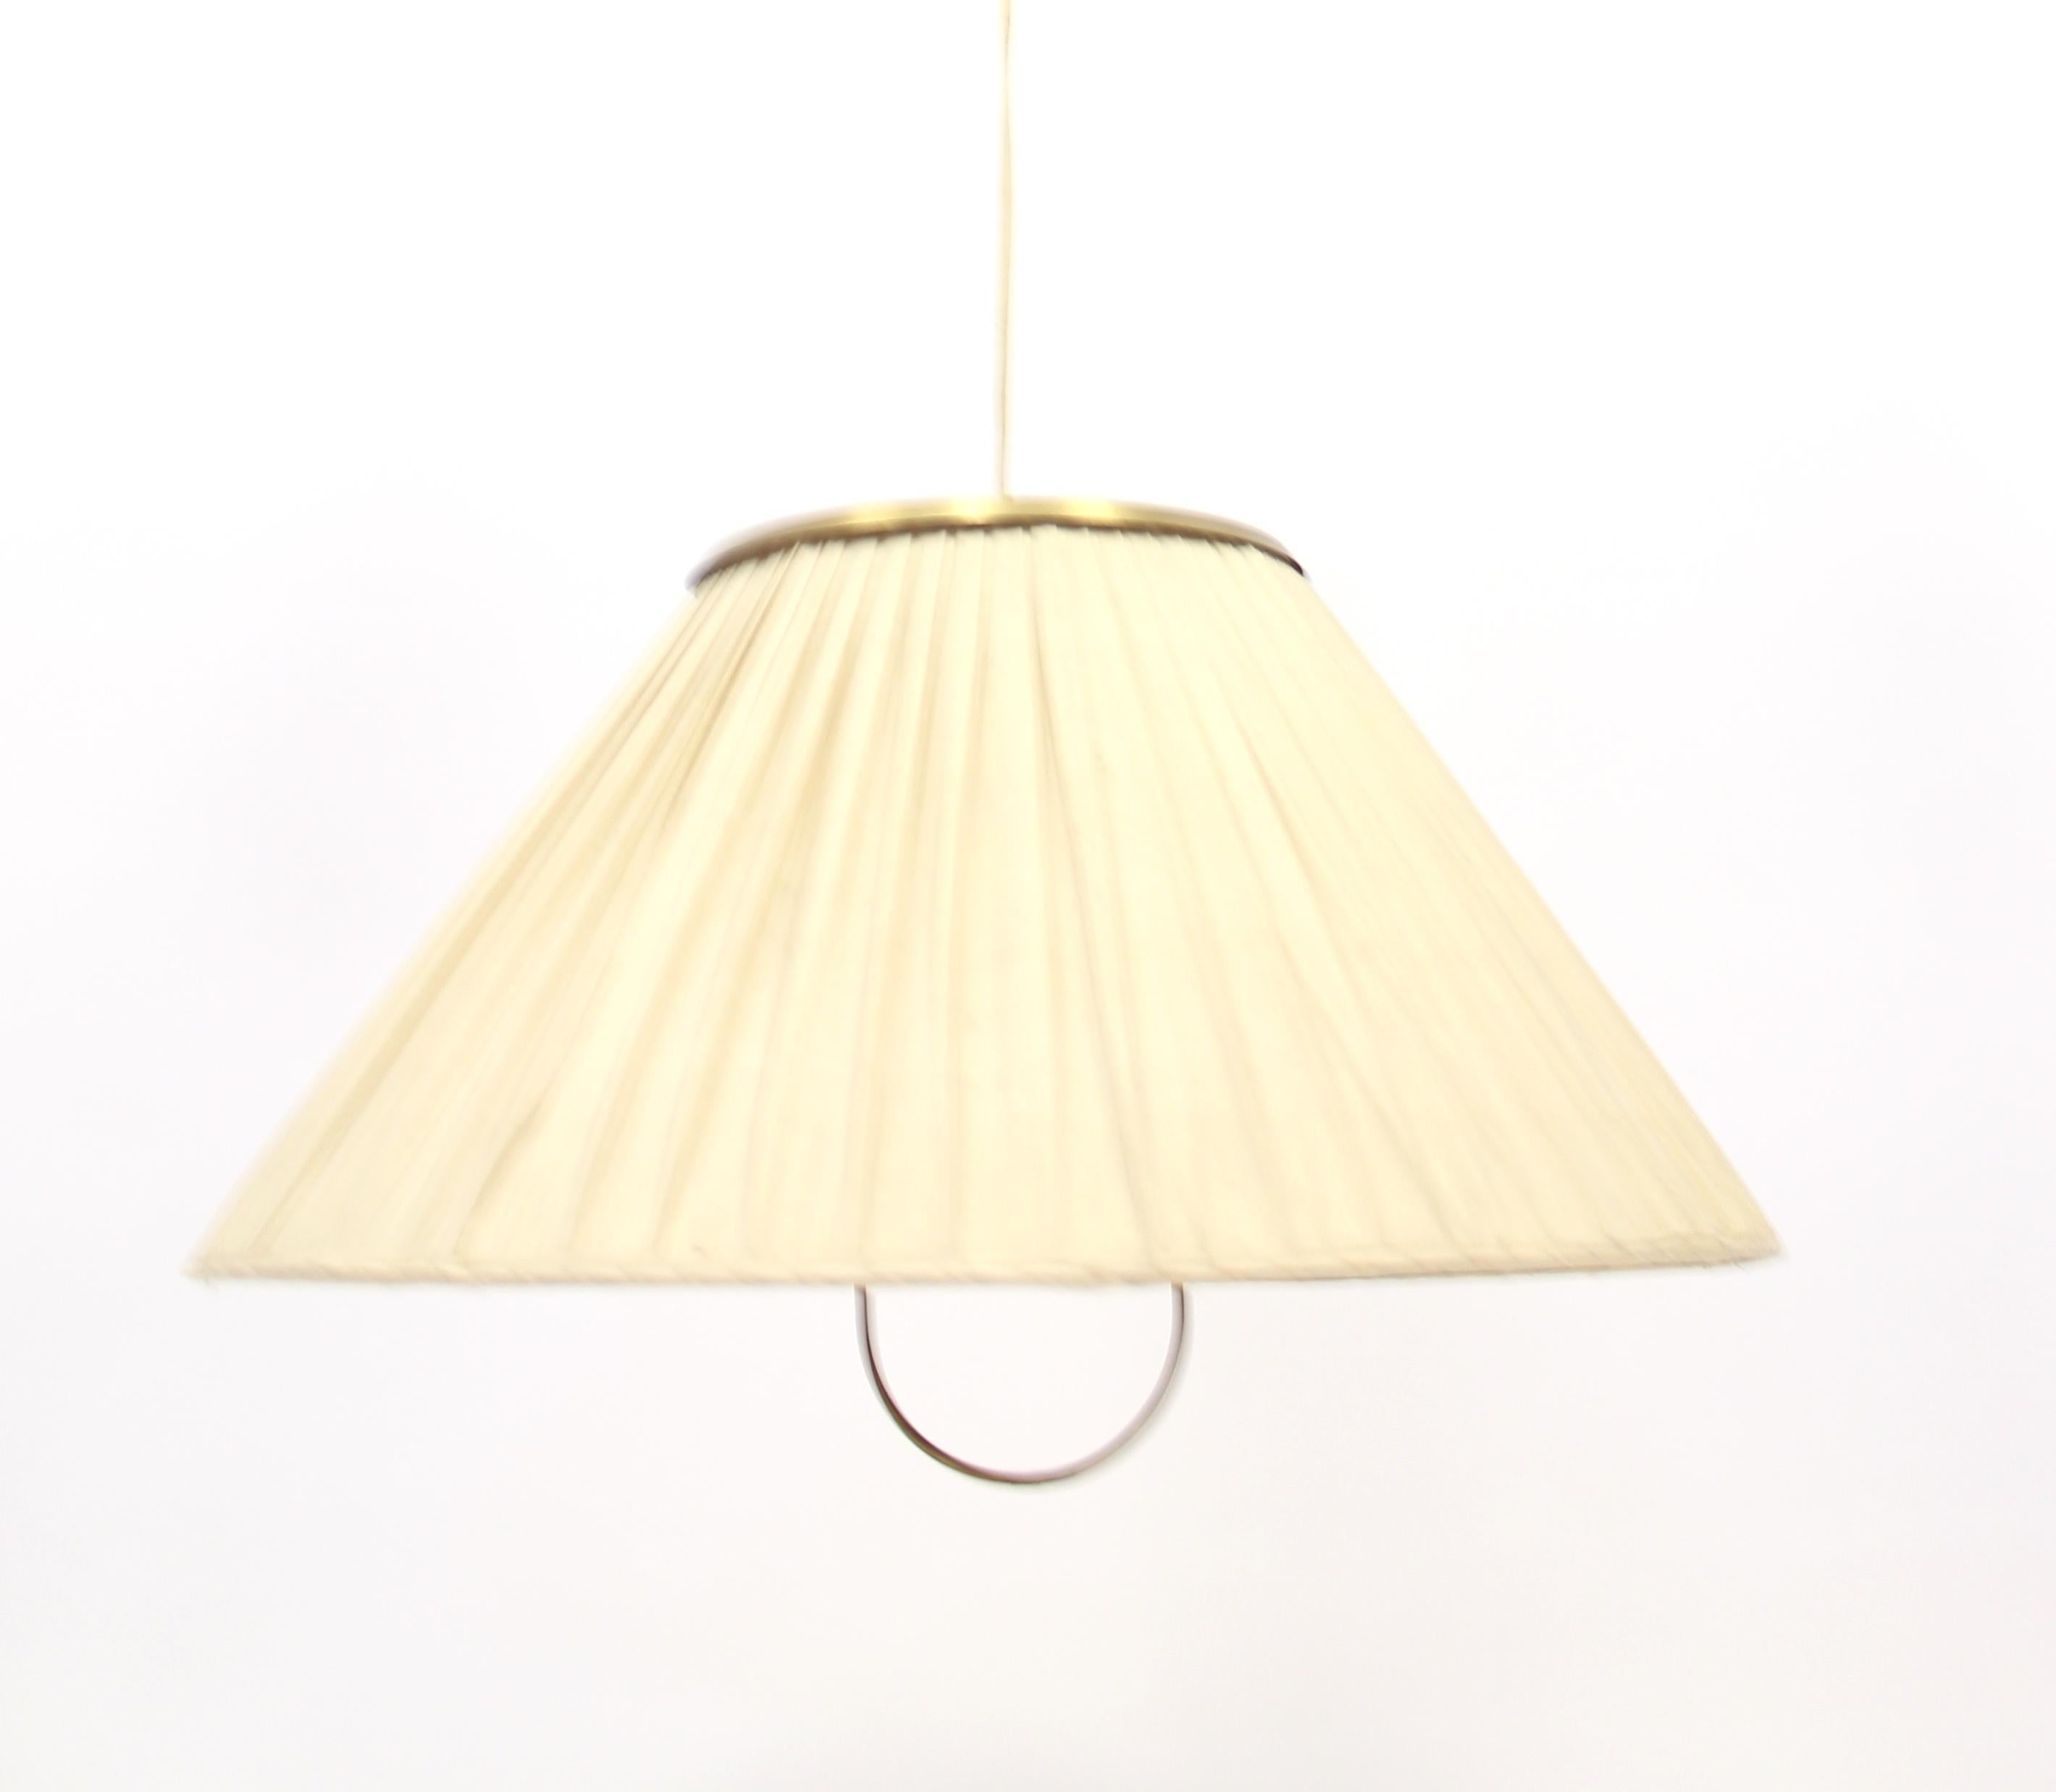 Scandinavian Modern Rare Model 1844 Ceiling Lamp by Josef Frank for Svenskt Tenn, 1950s